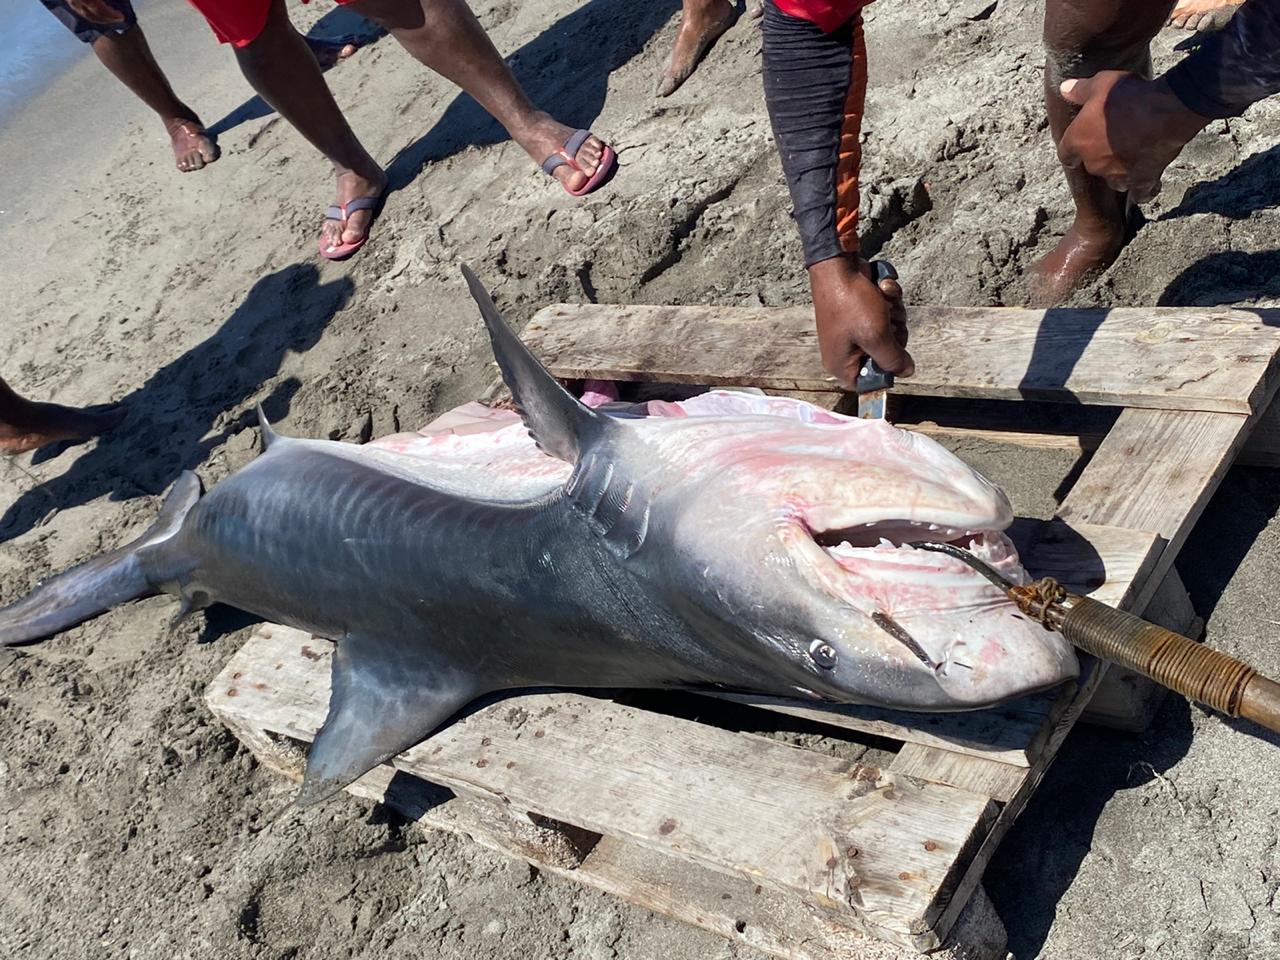     Un requin tigre de 90 kilos pêché au large de Saint-Pierre 

